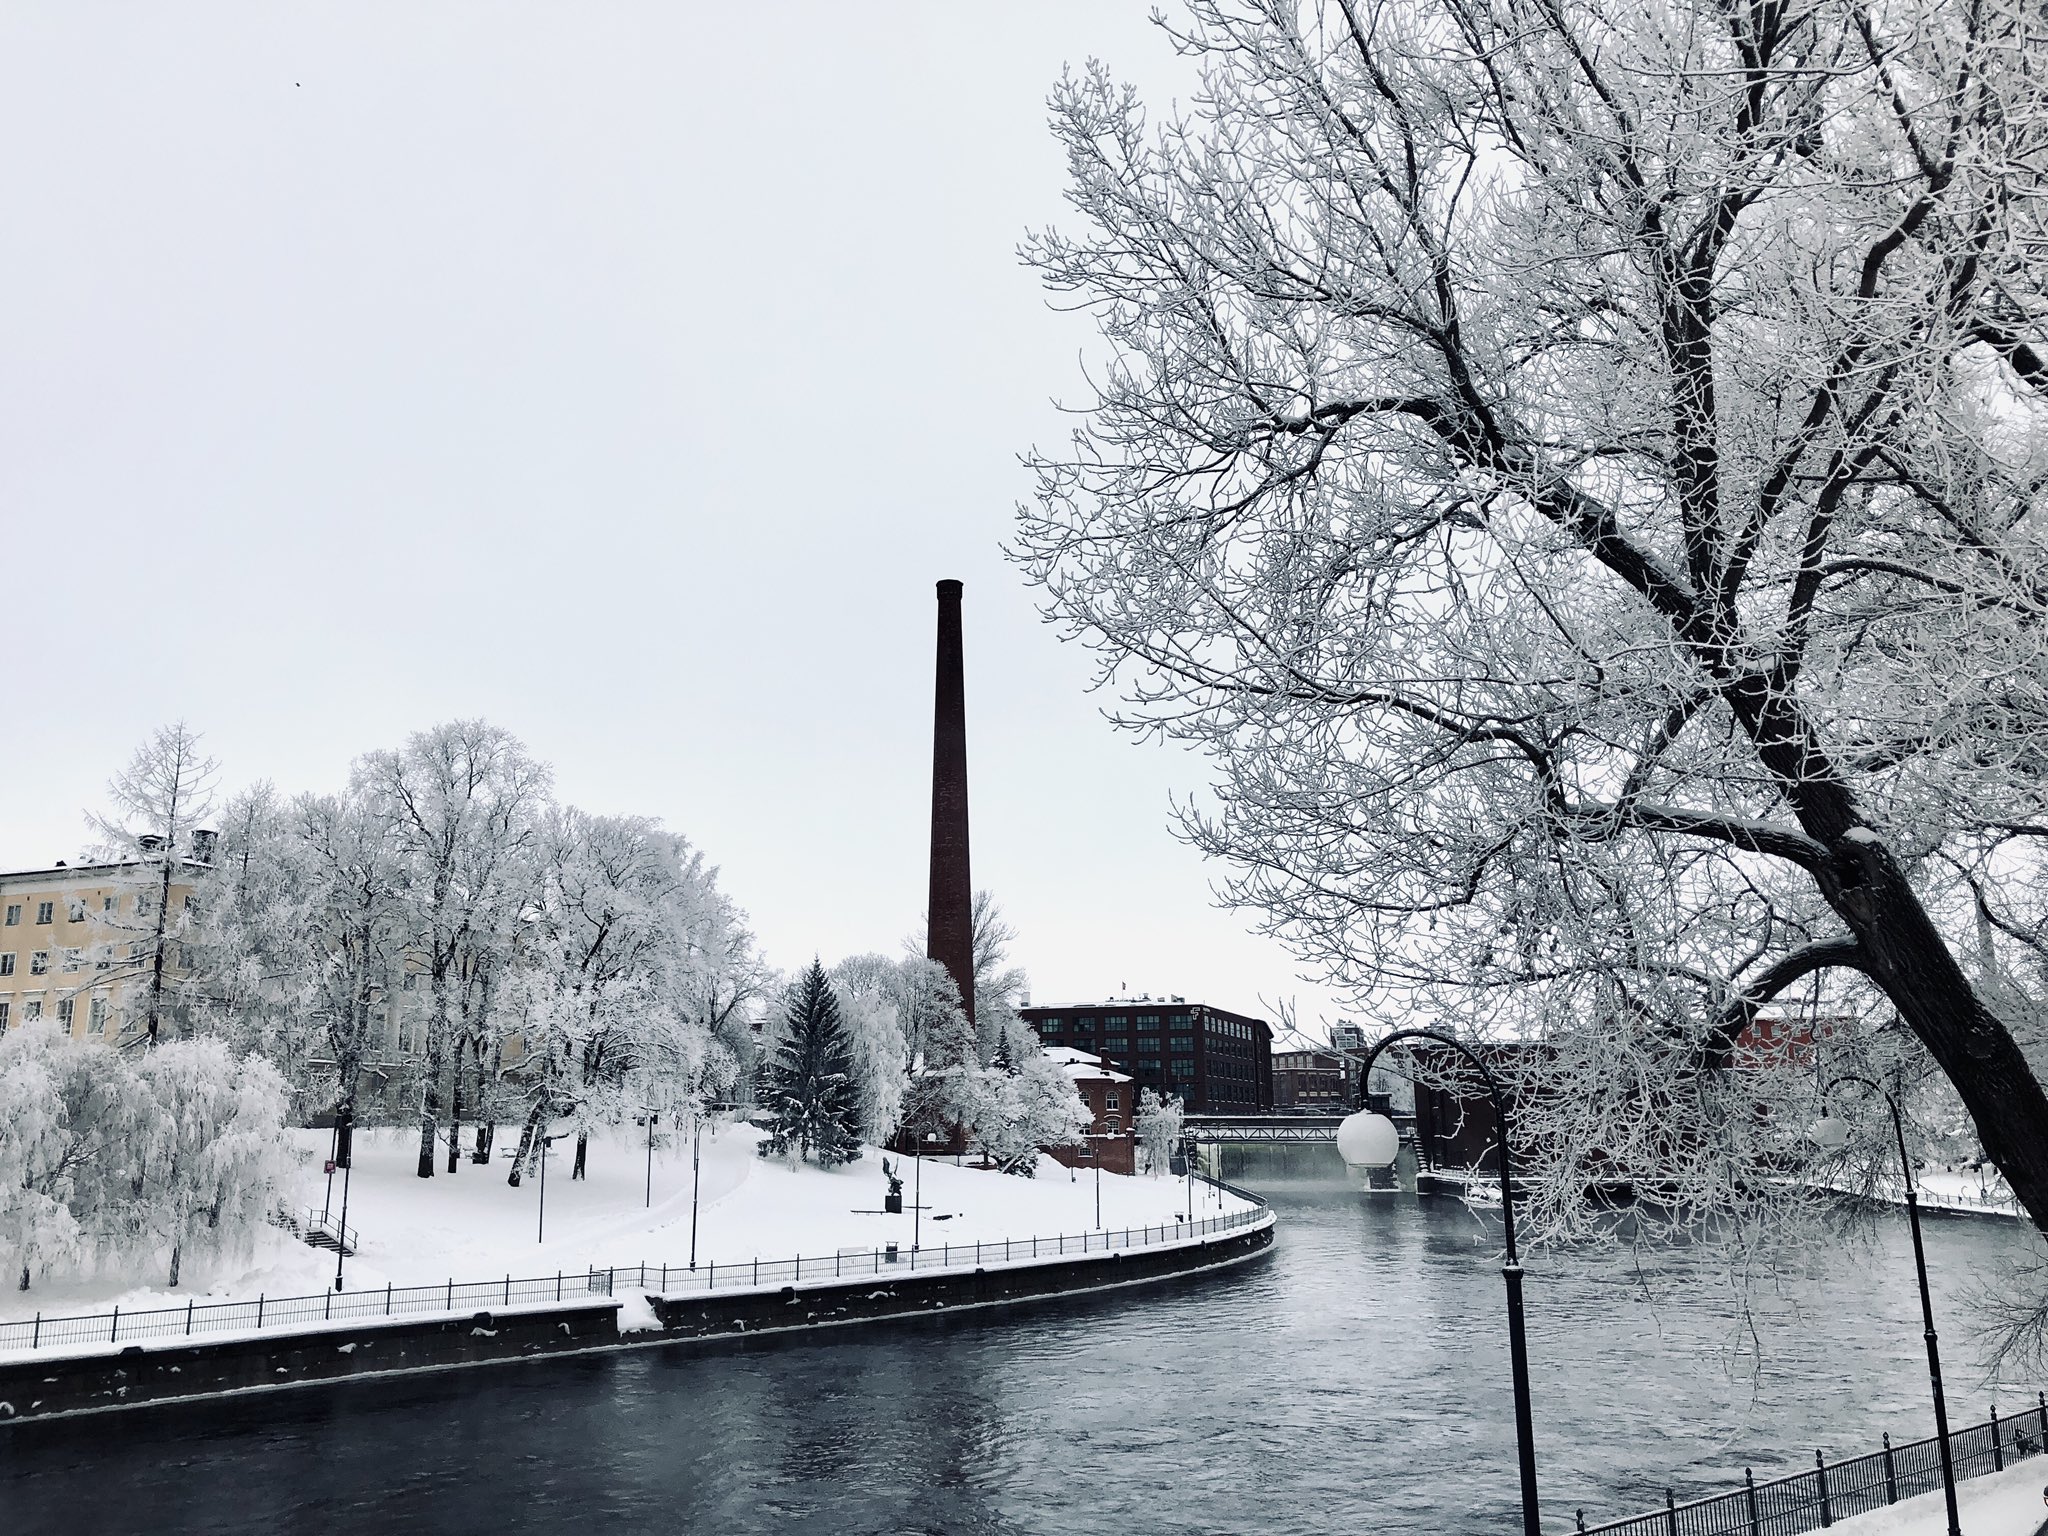 北欧で芸人 Gen Takagi これもリアルなフィンランド フィンランド タンペレ本日の景色 木々が雪で白くなってとてもきれいです フィンランド 風景 雪景色 海外 海外旅行写真見て旅行した気になろう 北欧に行きたい気持ちを満たそう 北欧